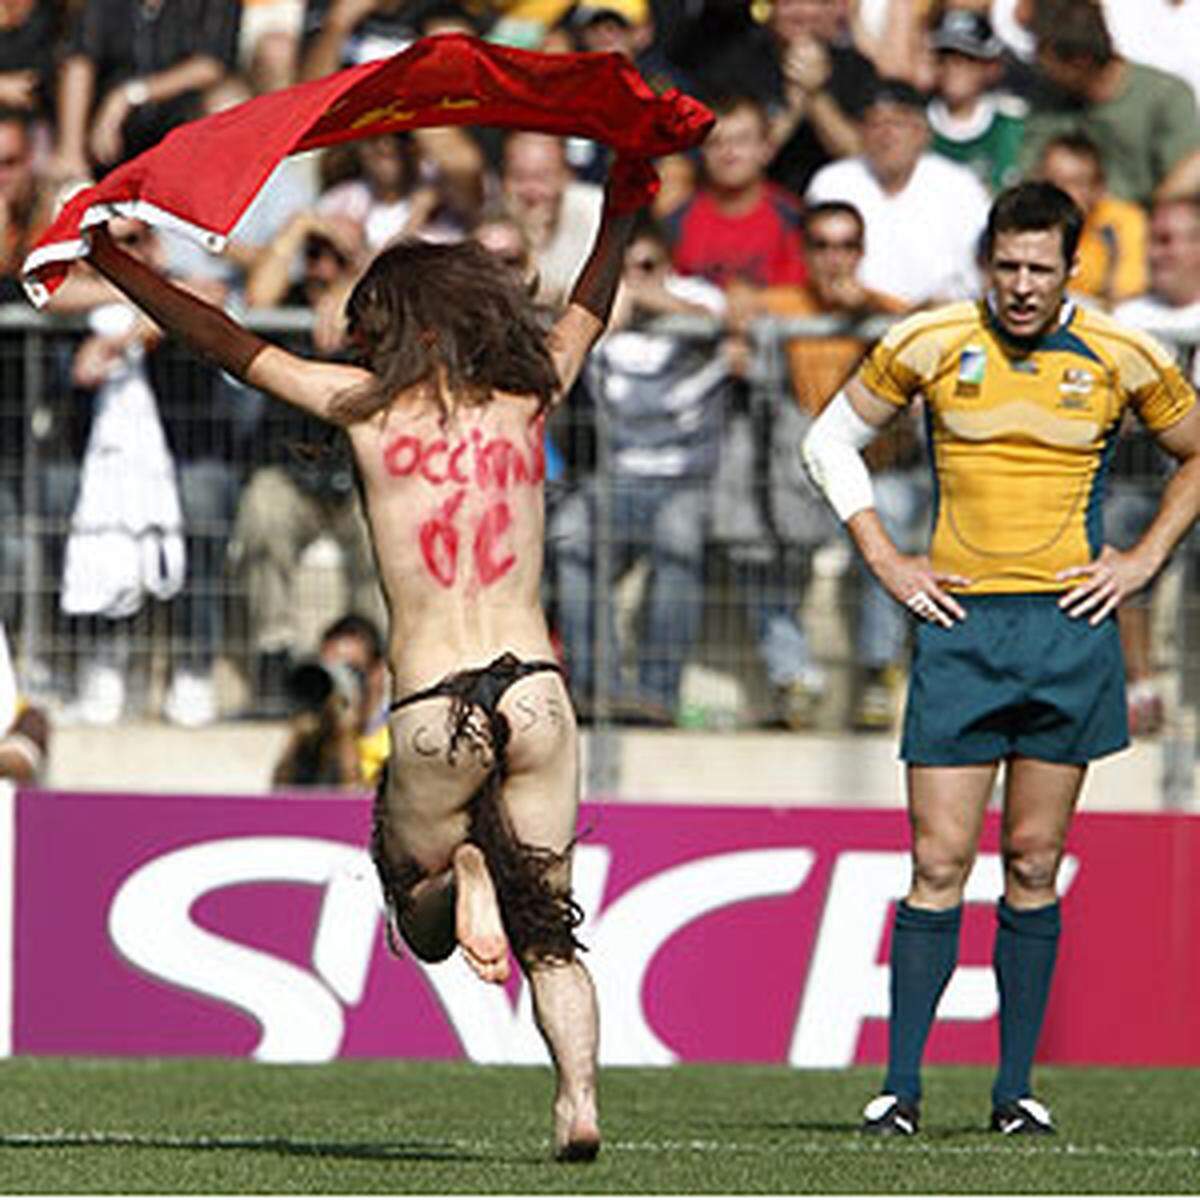 Rugby scheint überhaupt eine beliebte Sportart für Flitzer zu sein.